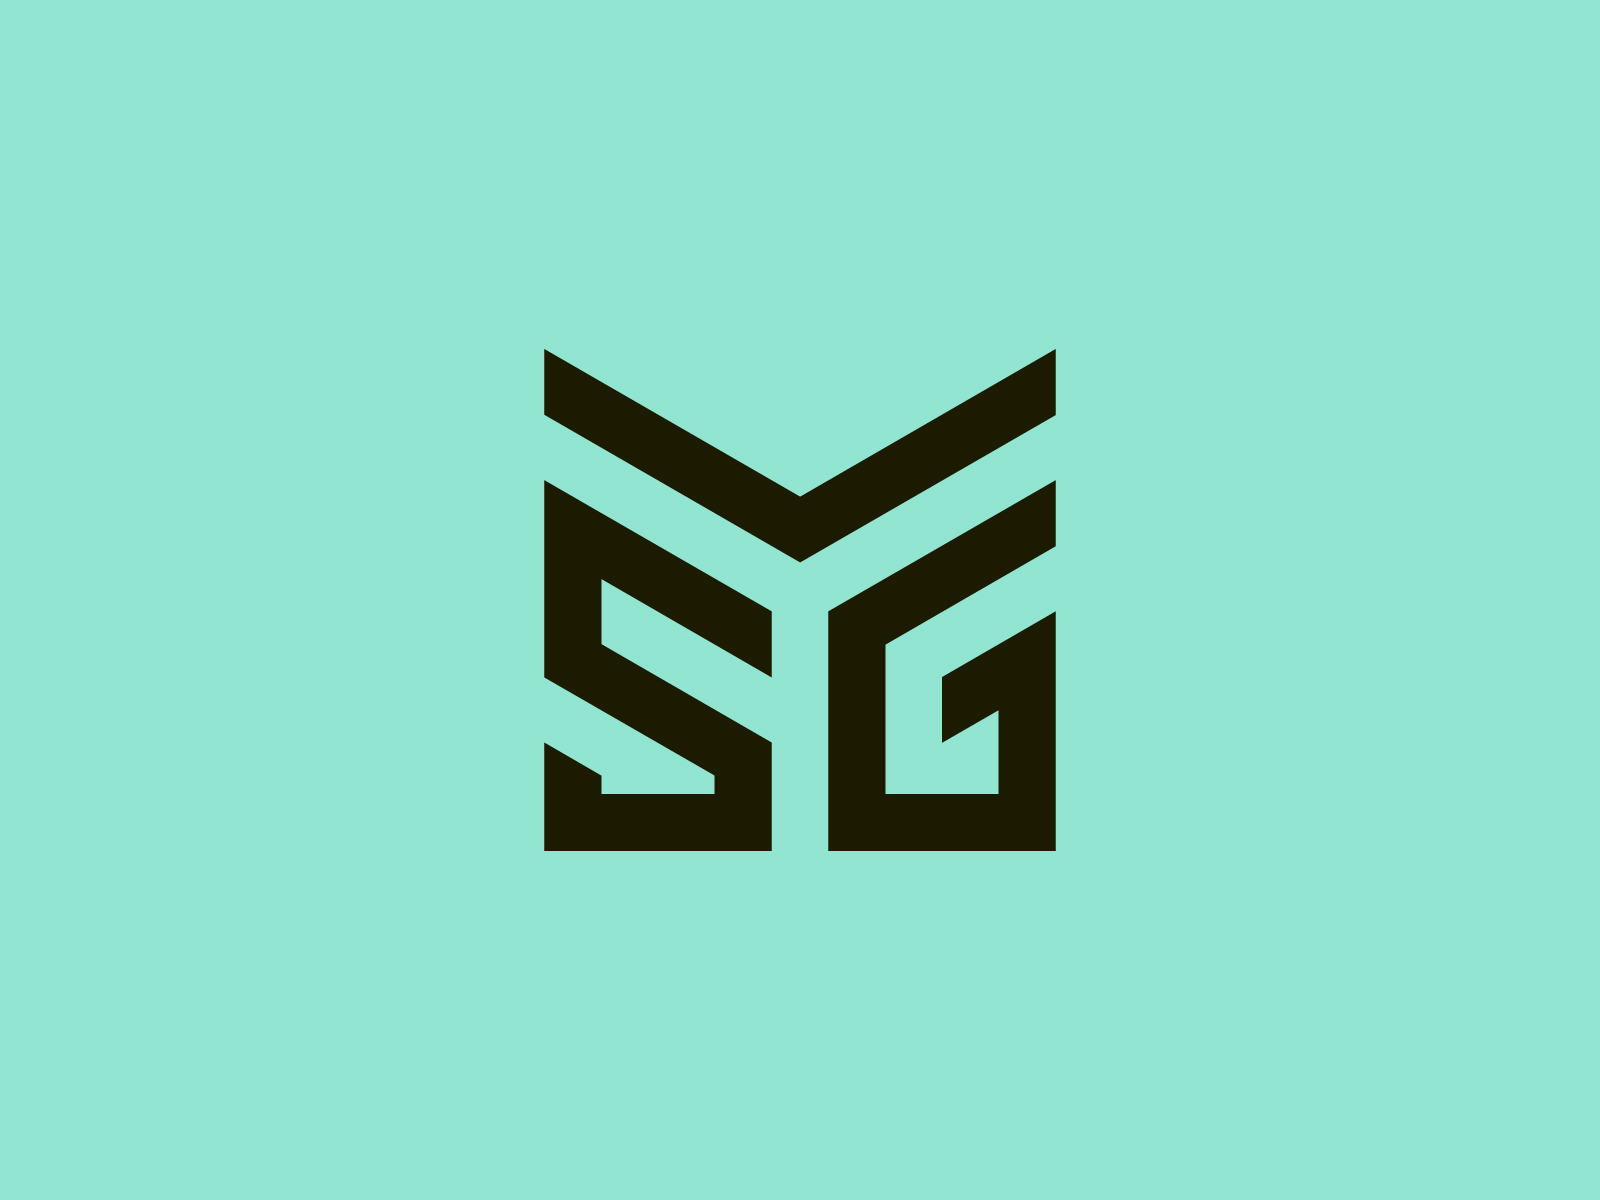 Smg letter logo design on black background Vector Image